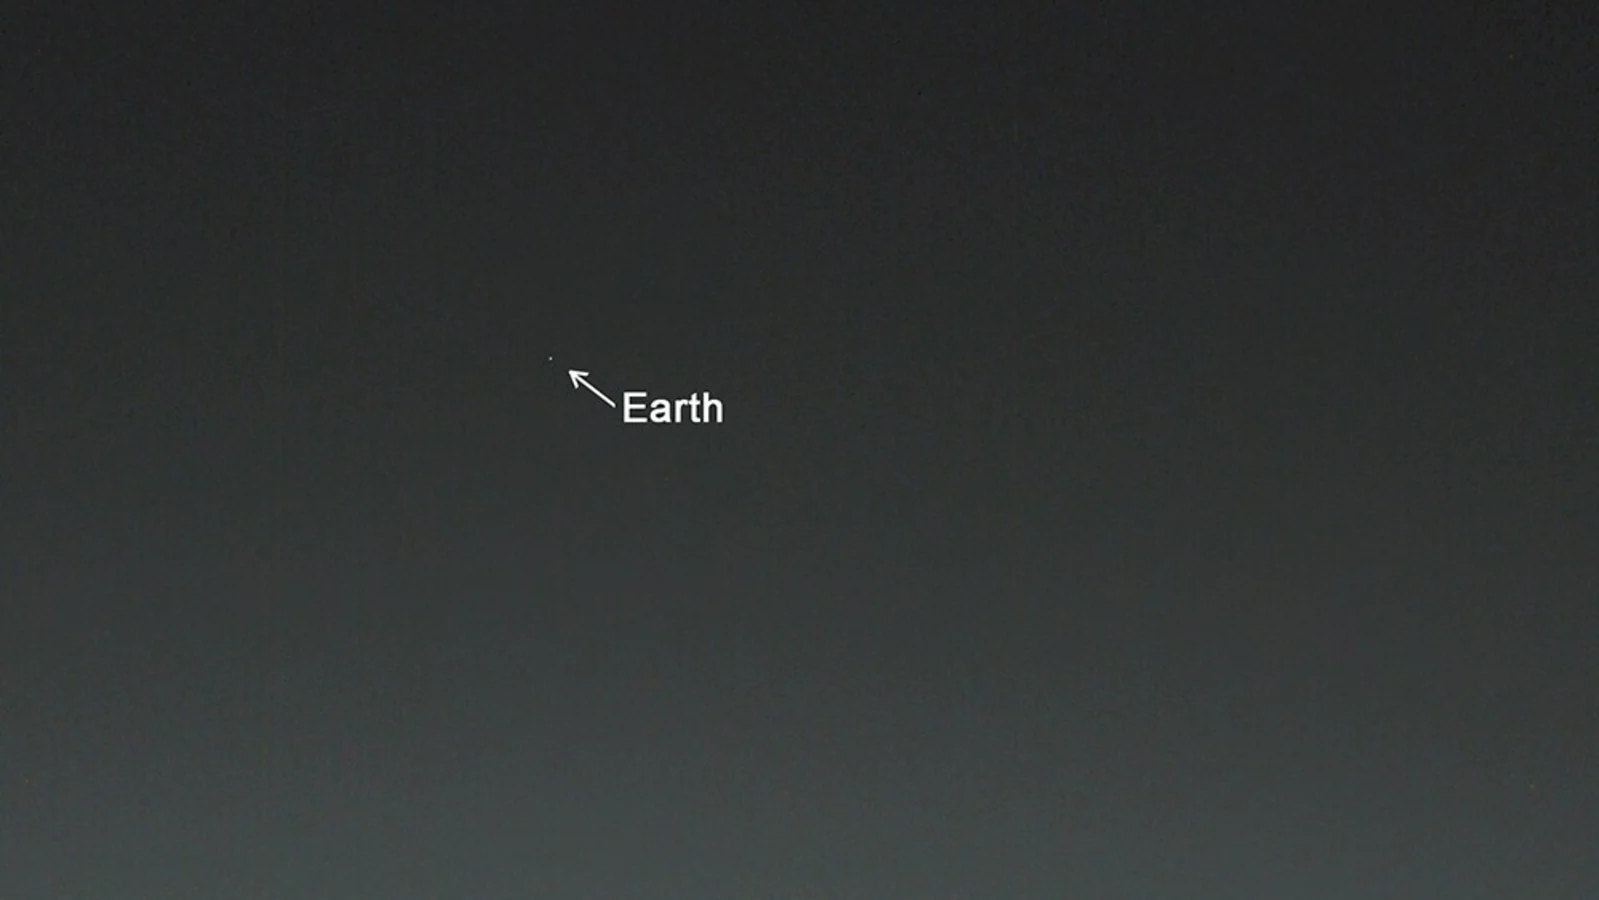 تصویر ناسا از شکل ظاهری زمین از مریخ - آناند ماهیندرا اطلاعات مربوط به خانه را فاش می کند